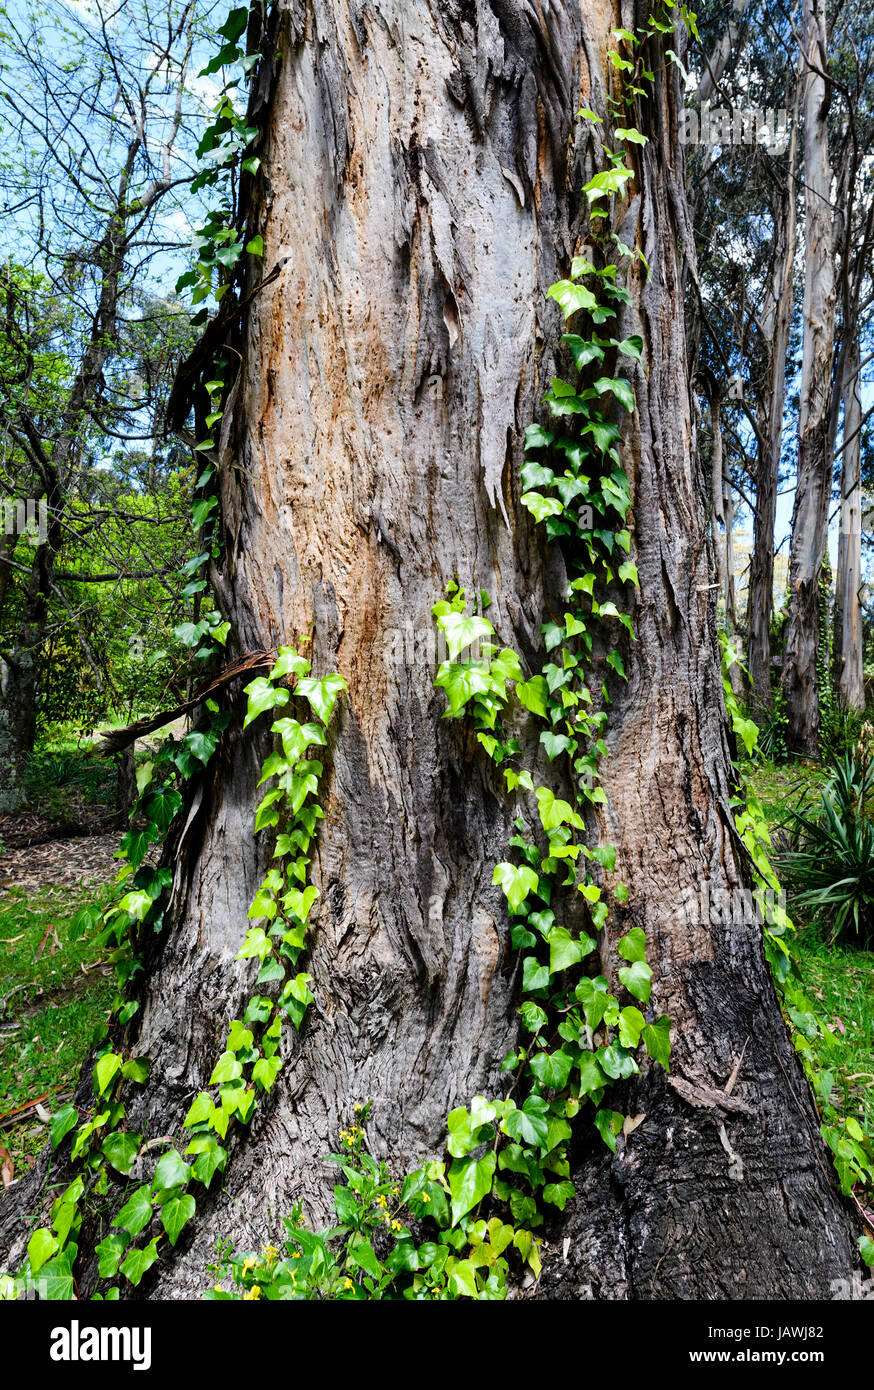 La hiedra común el cultivo de la vid de un tronco de árbol de eucalipto. Foto de stock